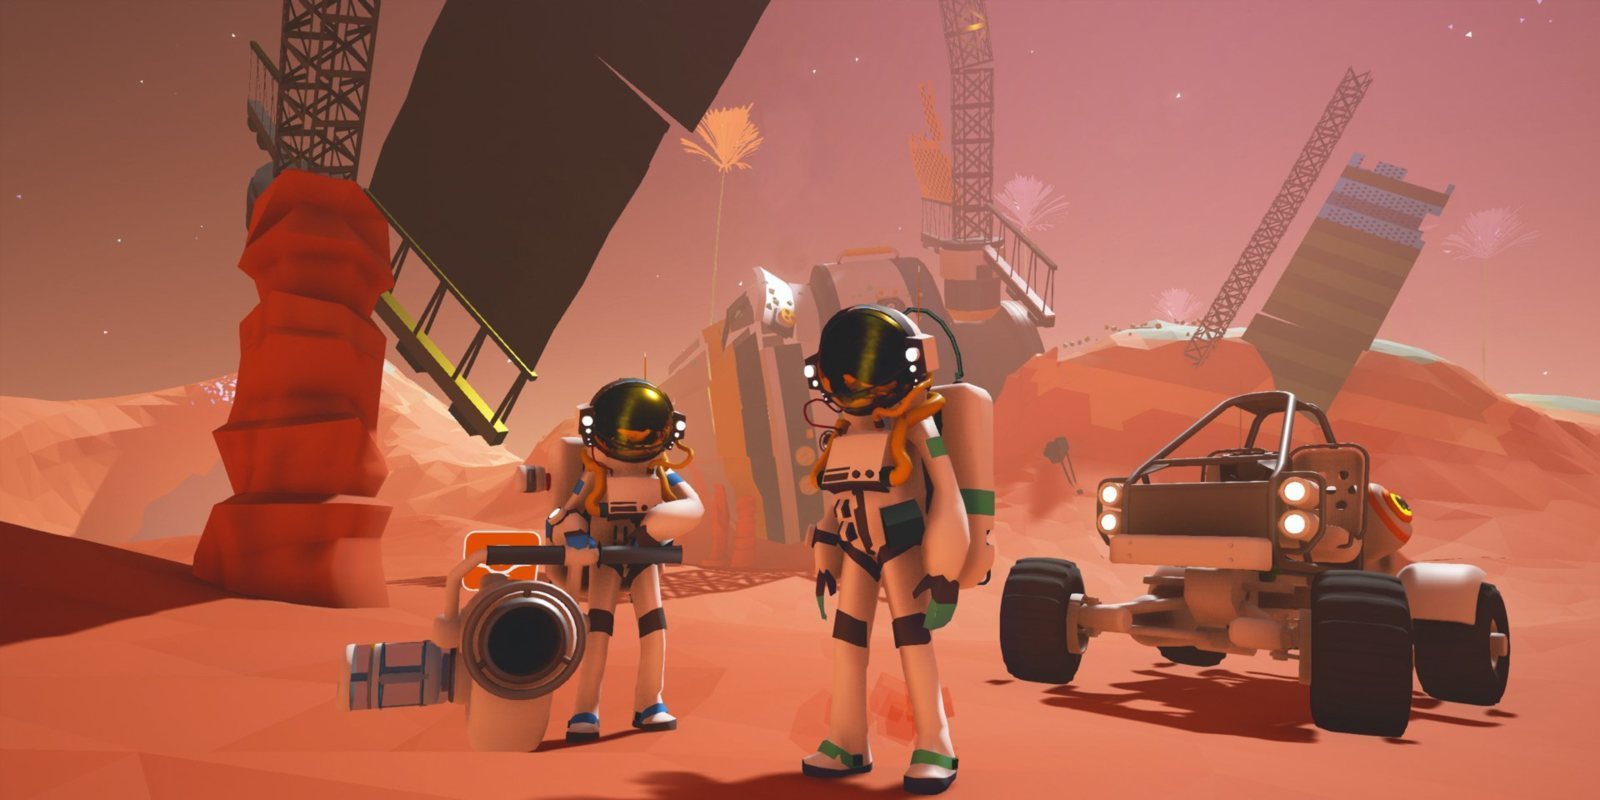 La versión 1.0 de 'Astroneer' promete objetivos claros y hasta 10 jugadores en cooperativo